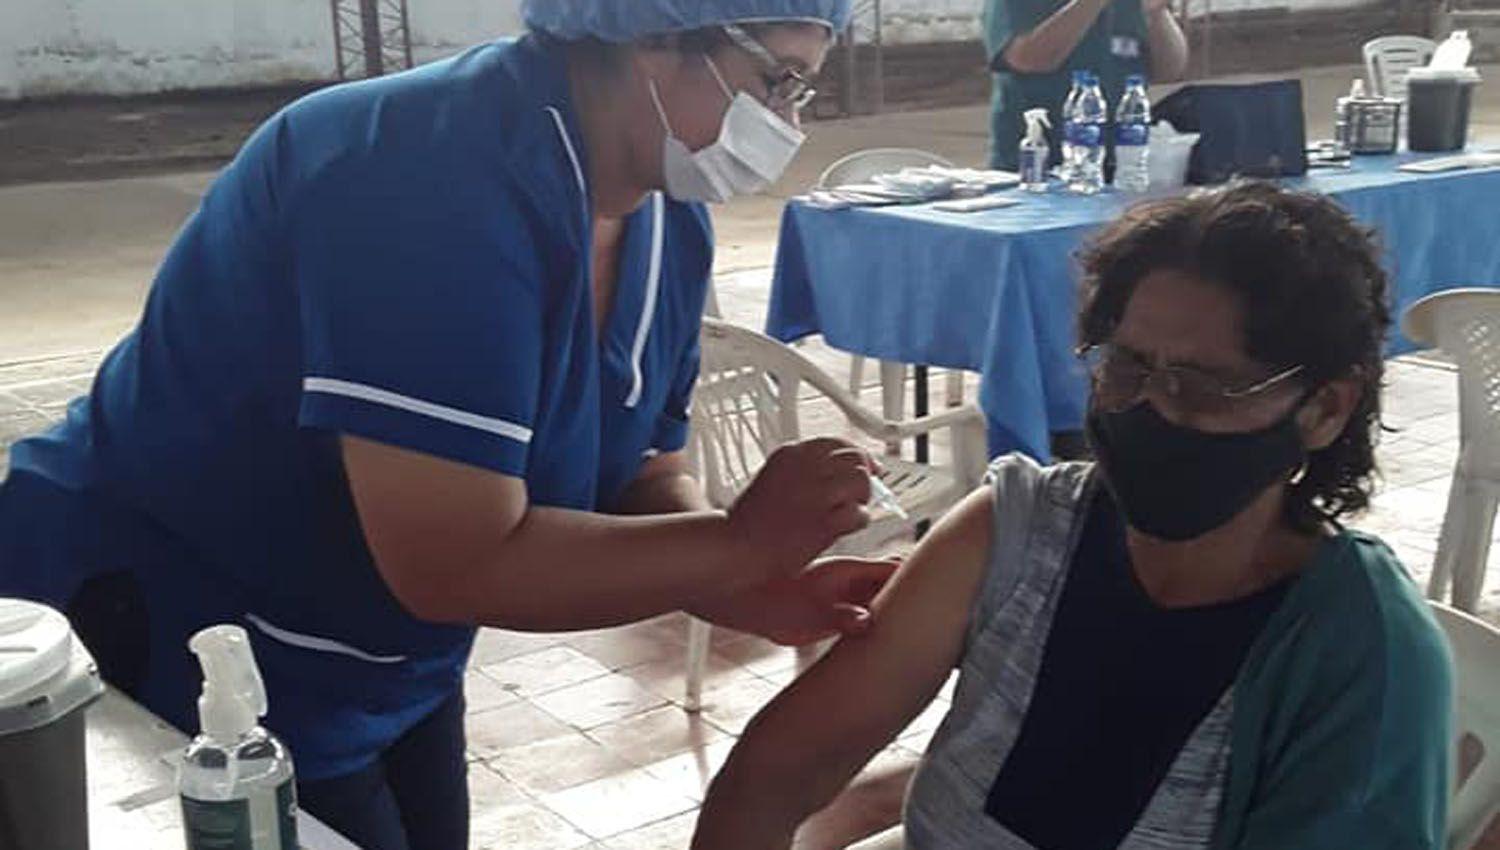 VIDEO  Loreto- La proacutexima semana comenzaraacuten a vacunar a los mayores de 70 antildeos